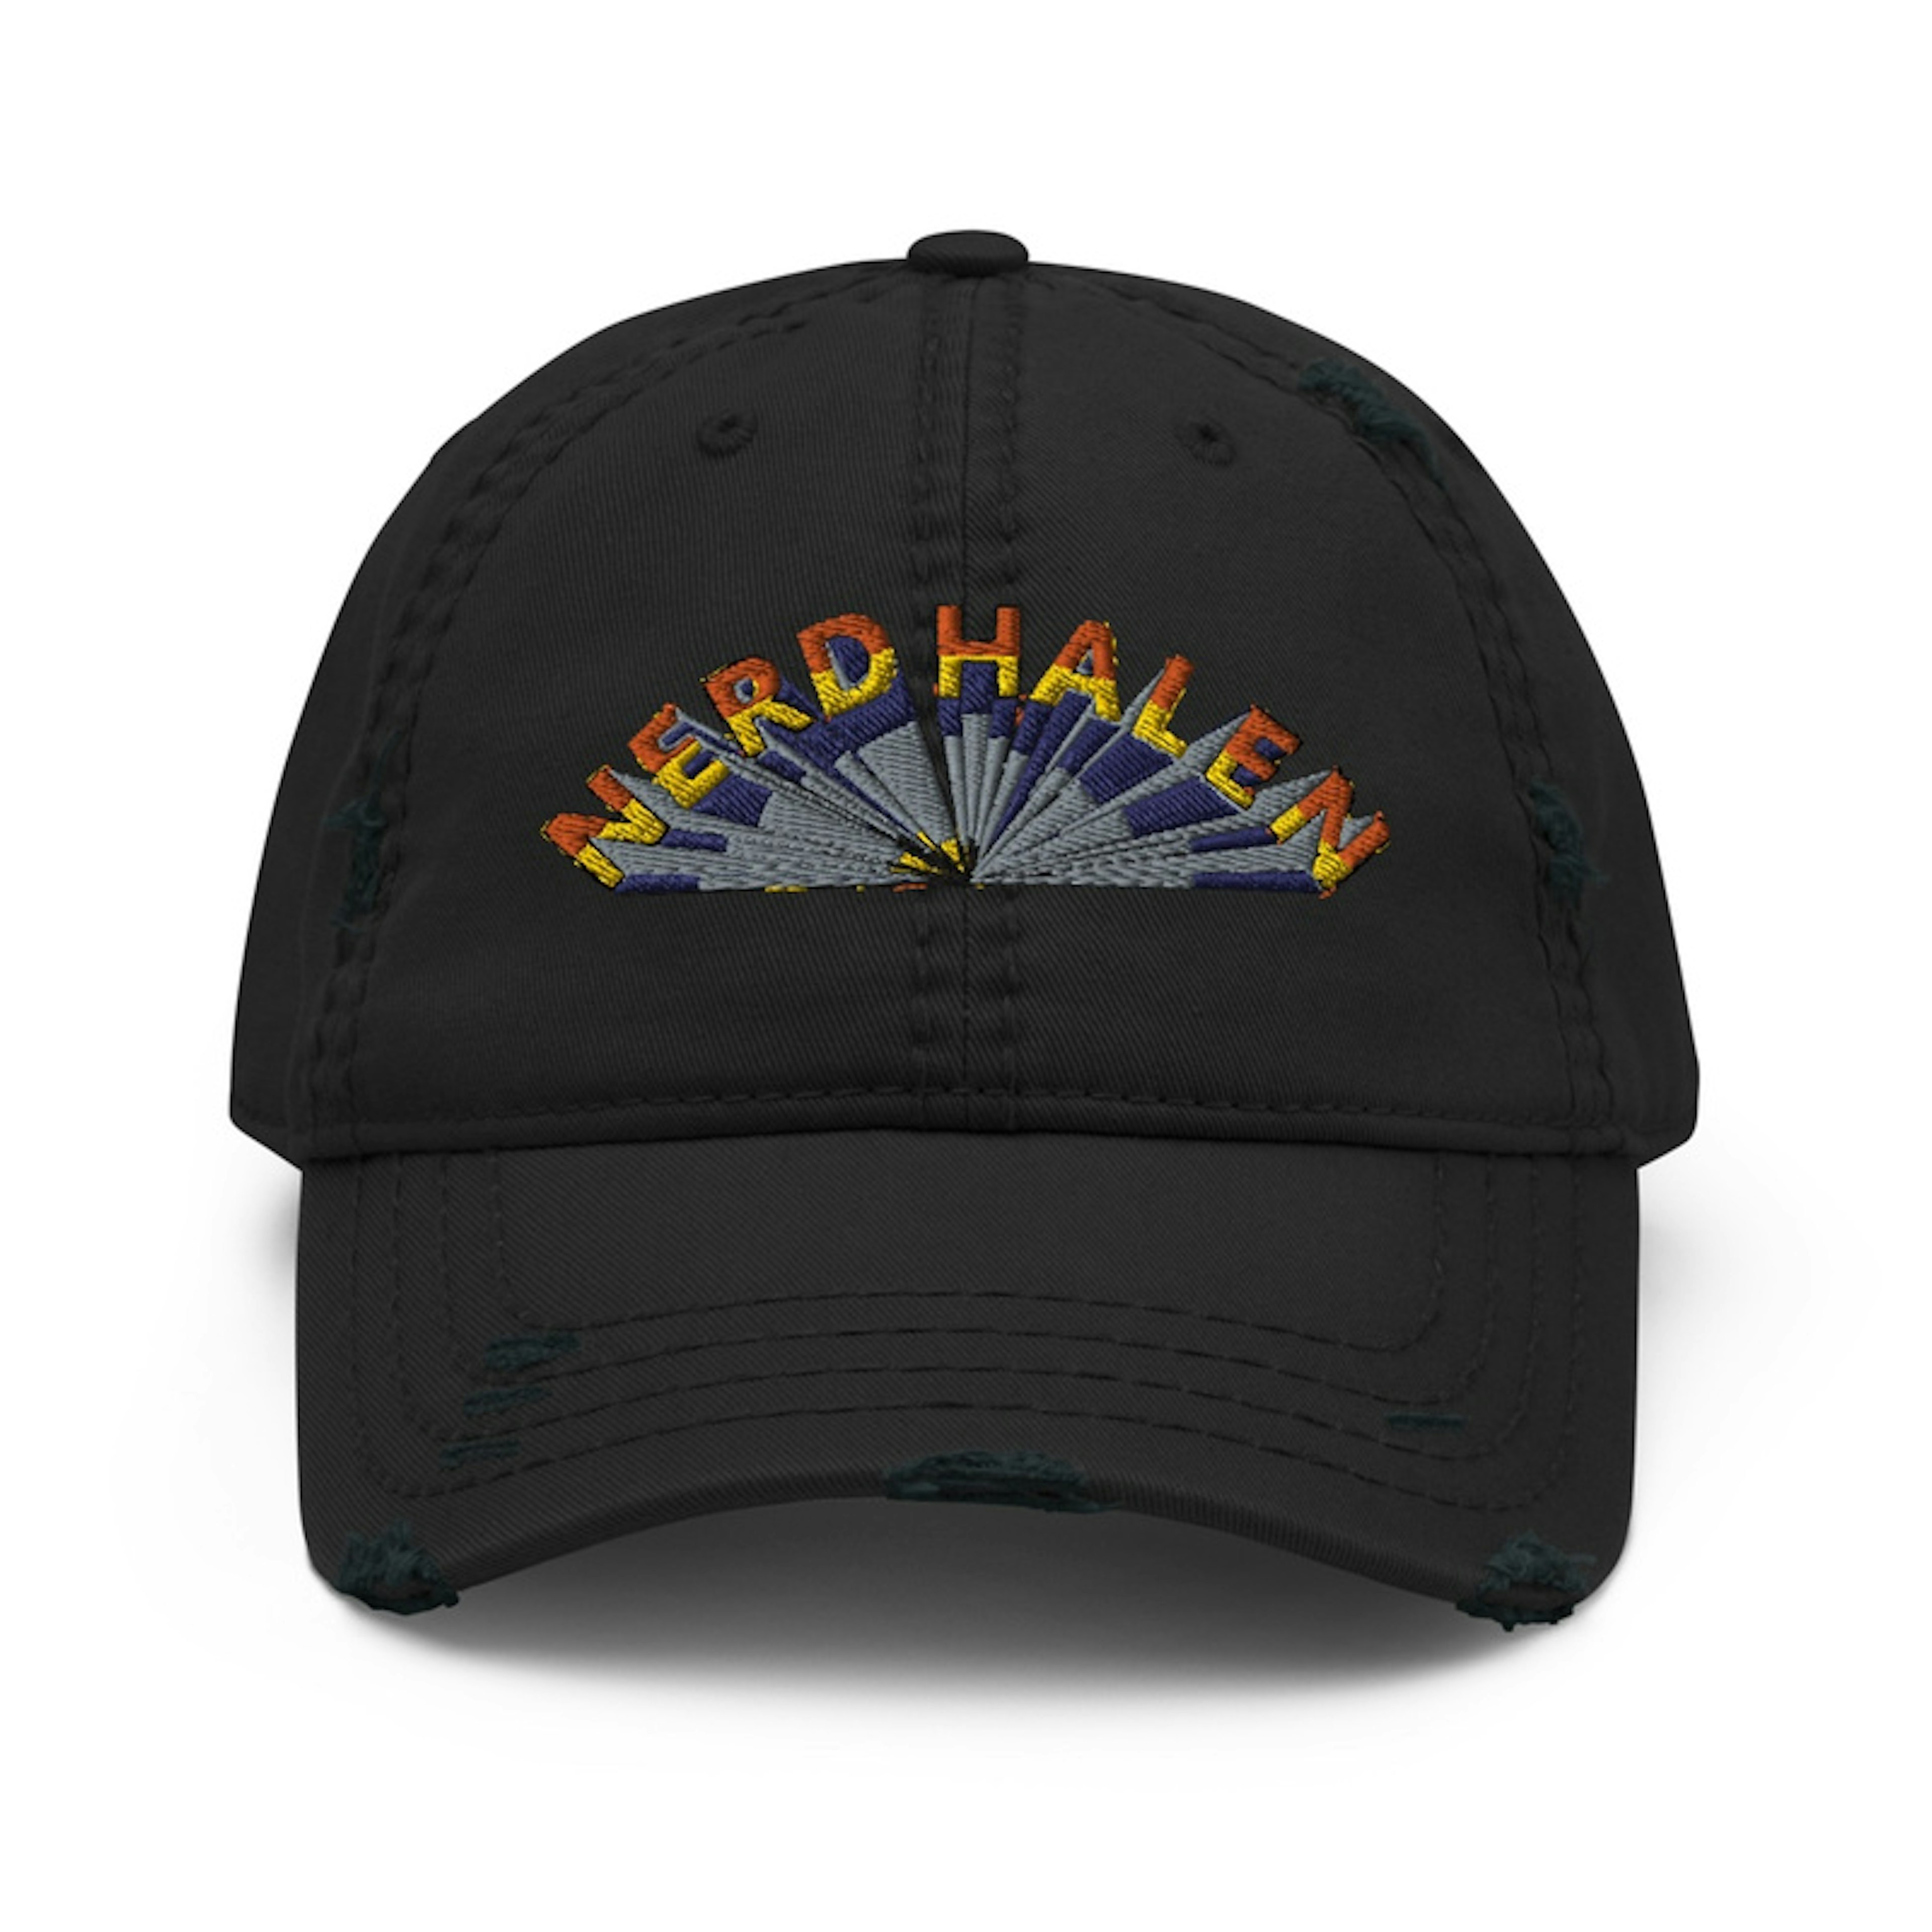 Nerd Halen Relic'd Cap